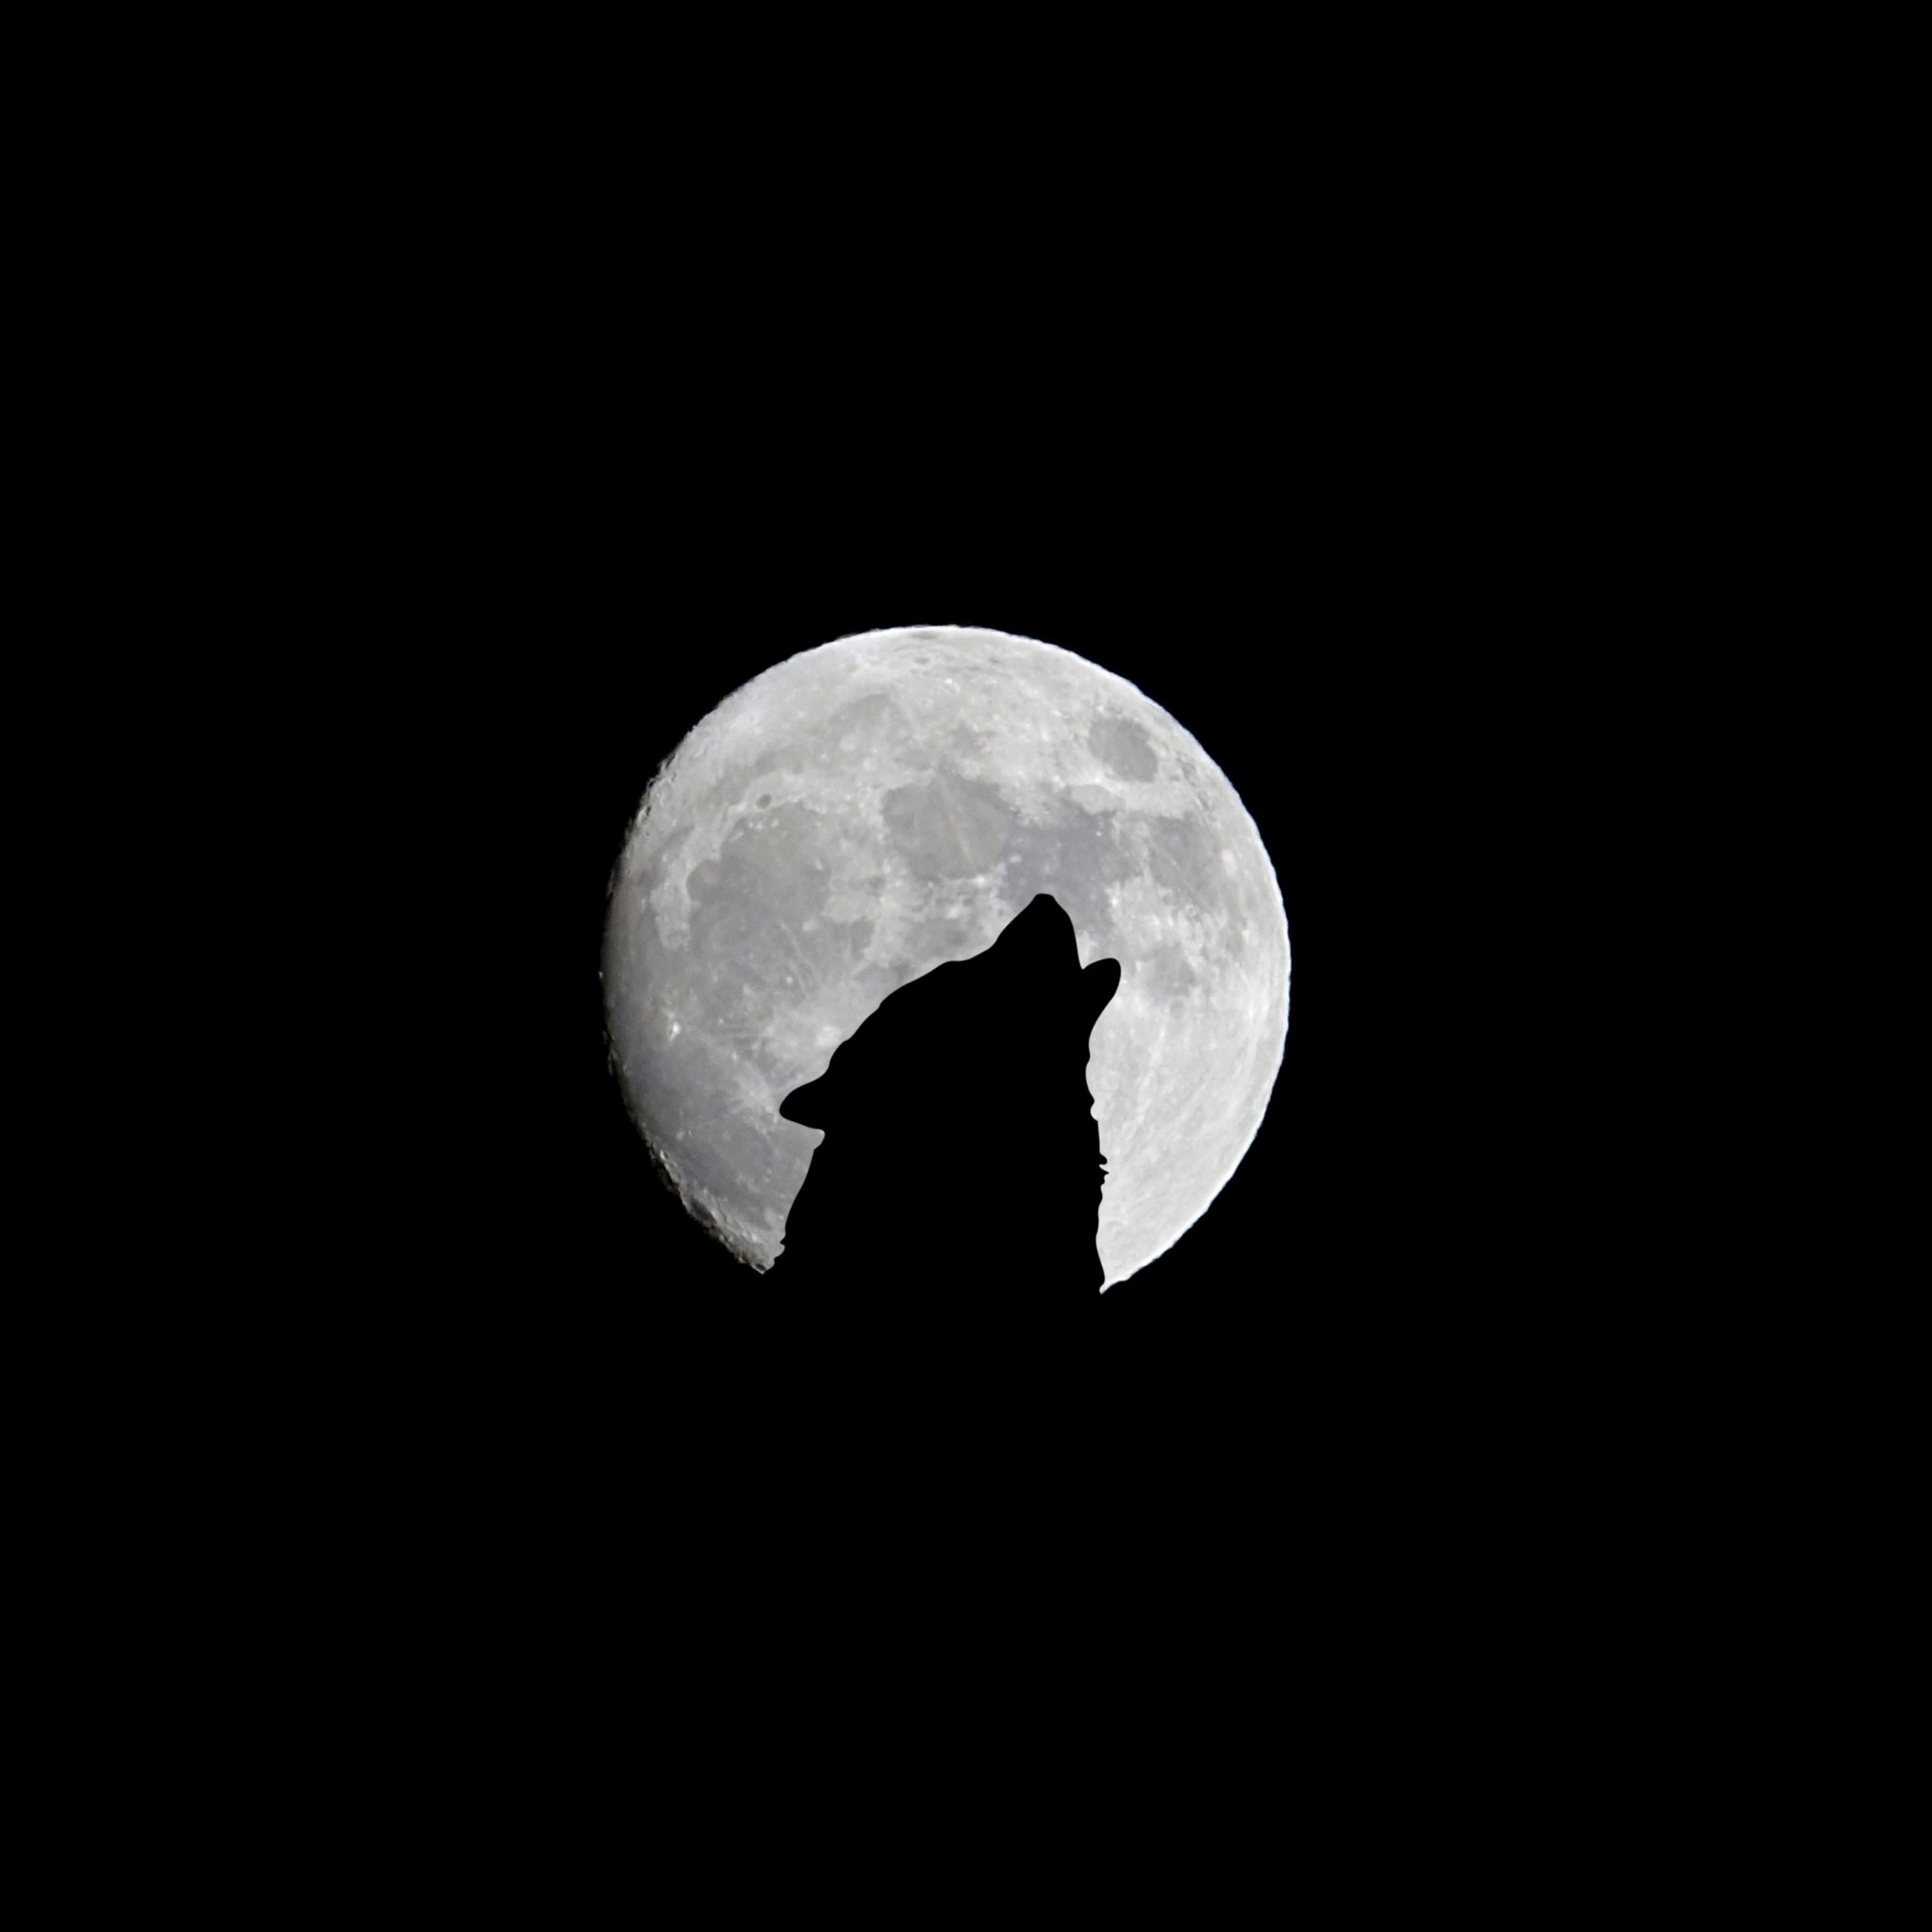 2524x2524 Parallax wallpaper 4k Silhouette of Wolf Full Moon Night Darkness iPad Wallpaper 2524x2524 pixels resolution